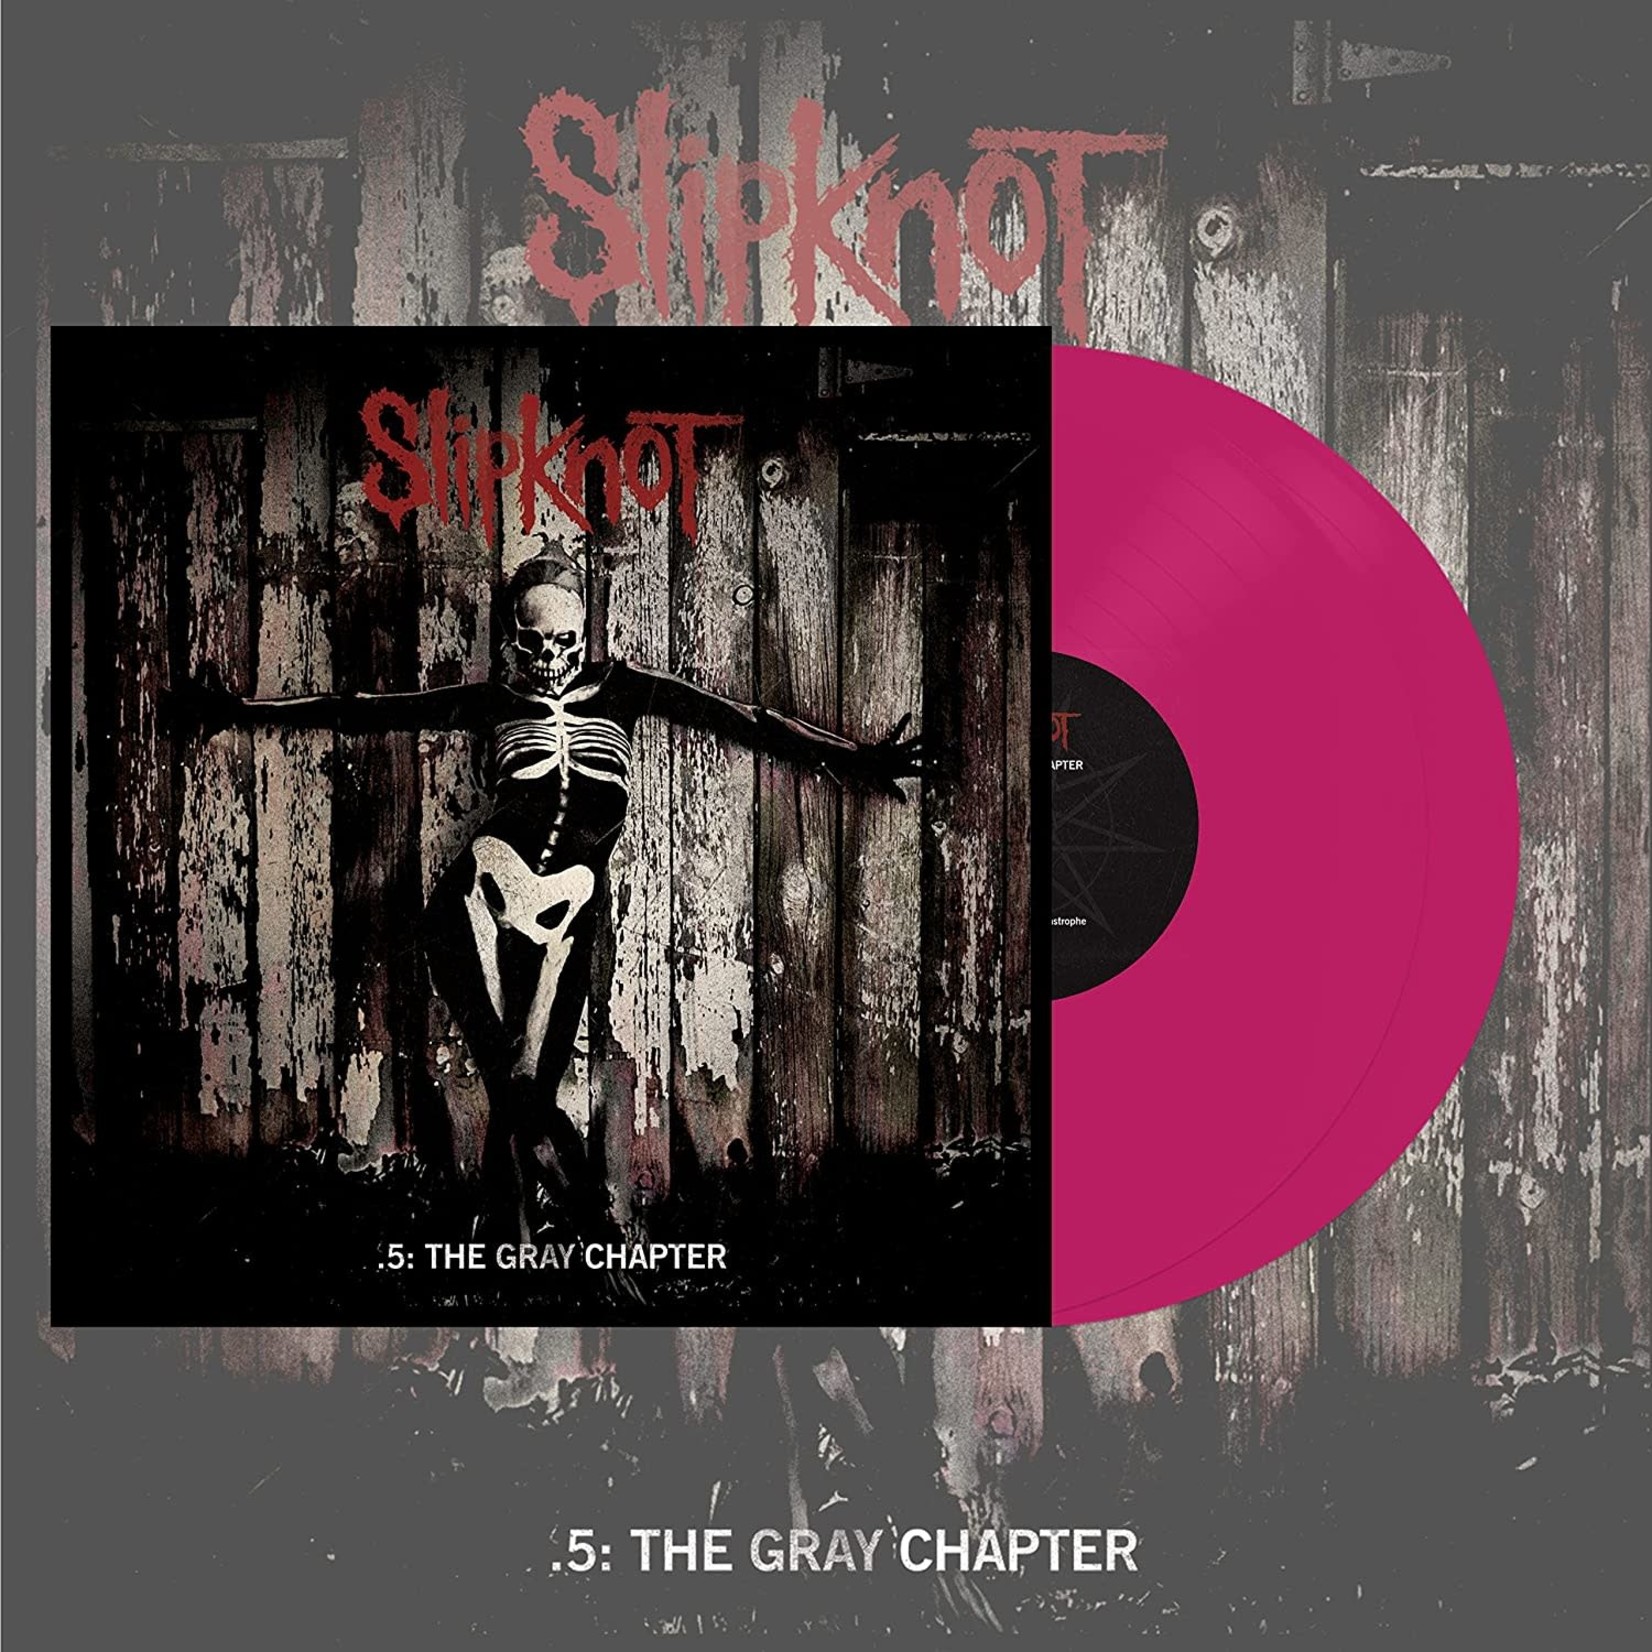 Vinyl Slipknot - .5: The Gray Chapter (Pink Vinyl)